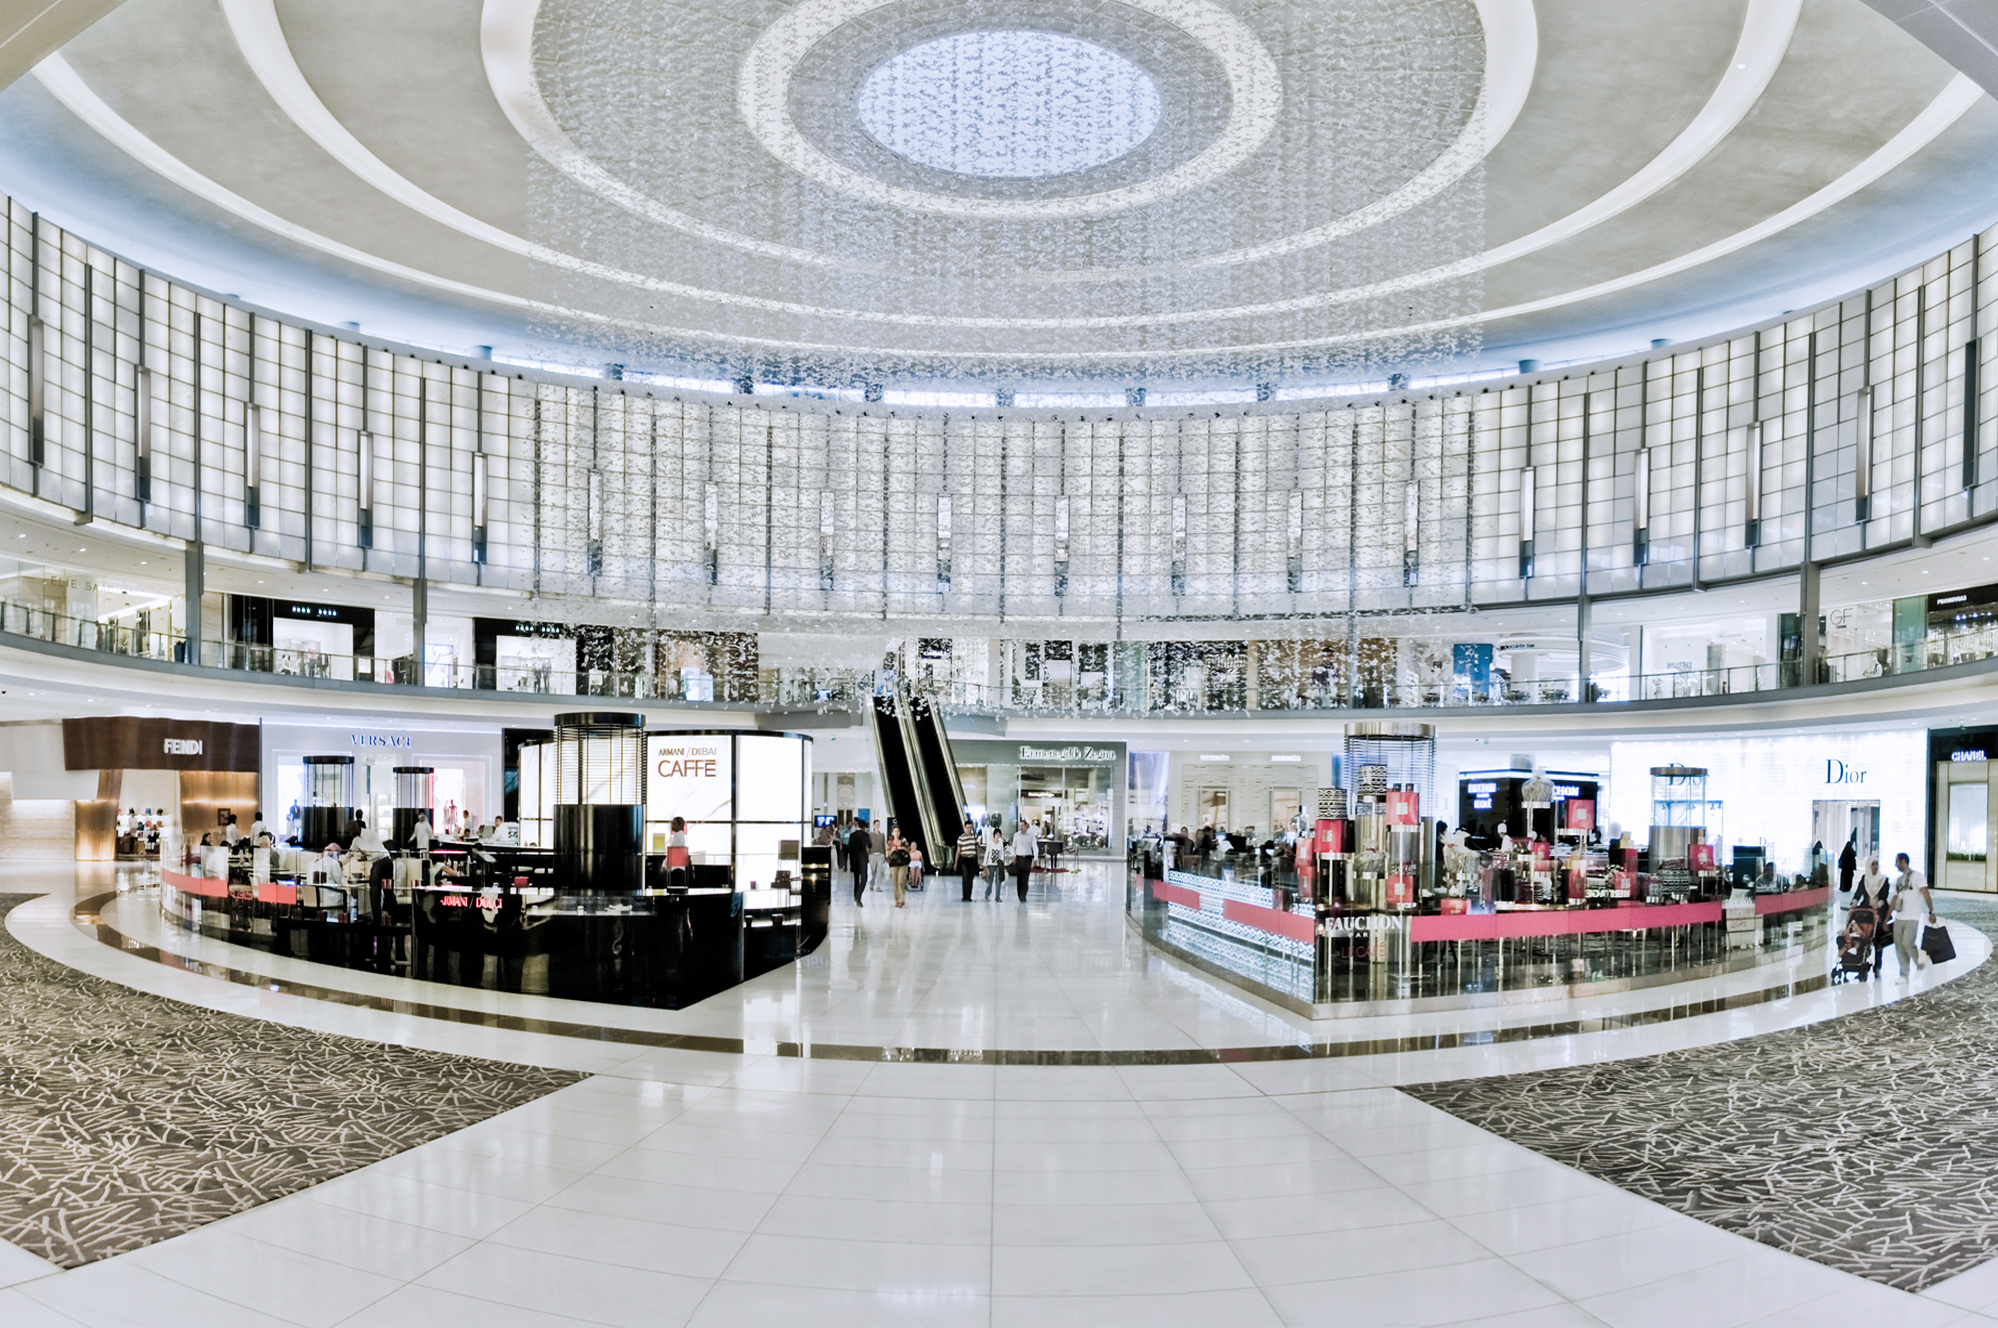 Trung tâm thương mại Dubai Mall - Dubai Mall - Dubai - Các Tiểu Vương Quốc Ả Rập Thống Nhất